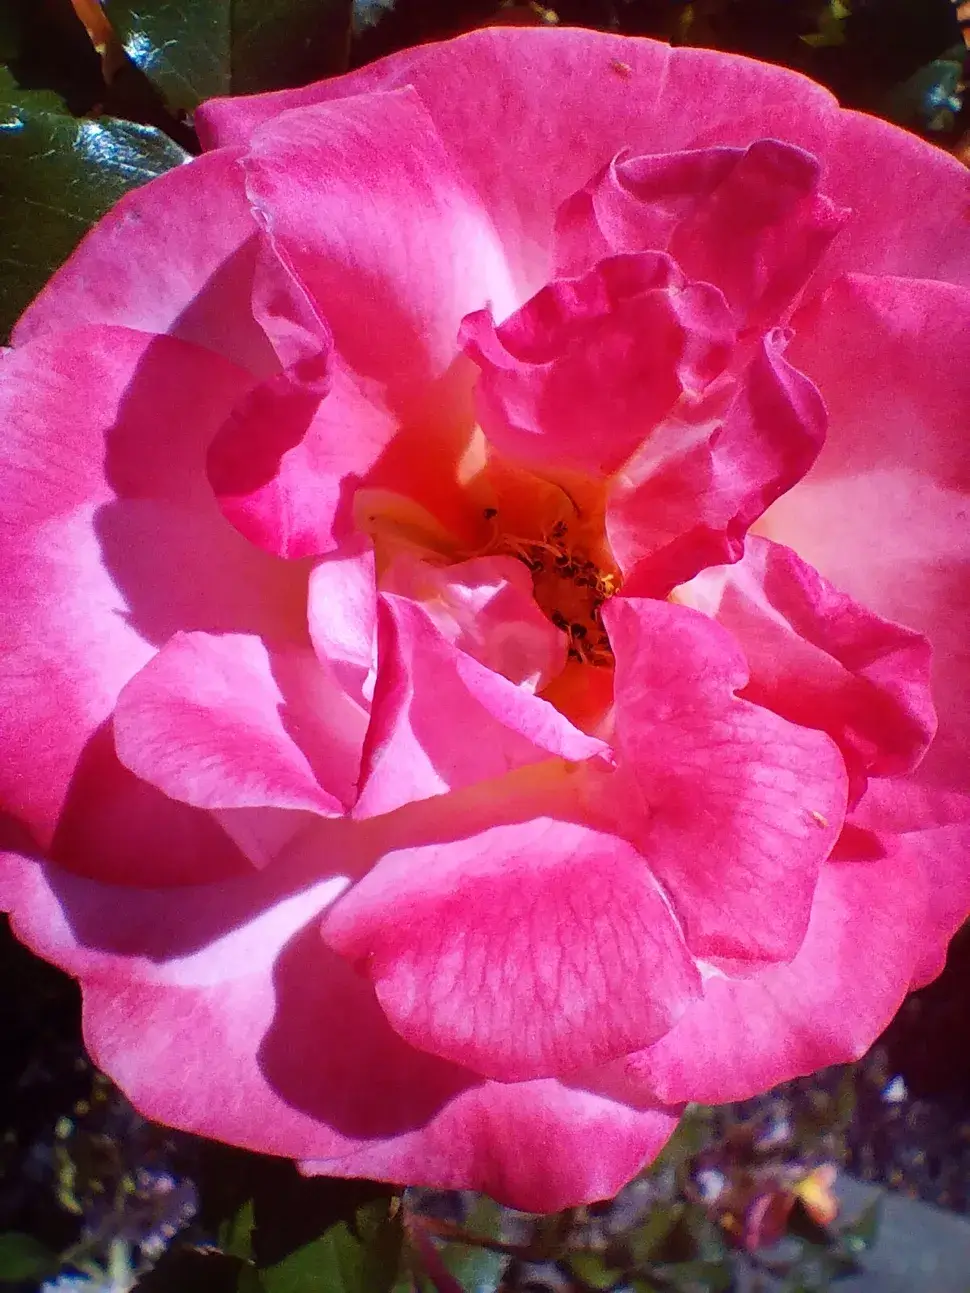 A close-up shot of a flower